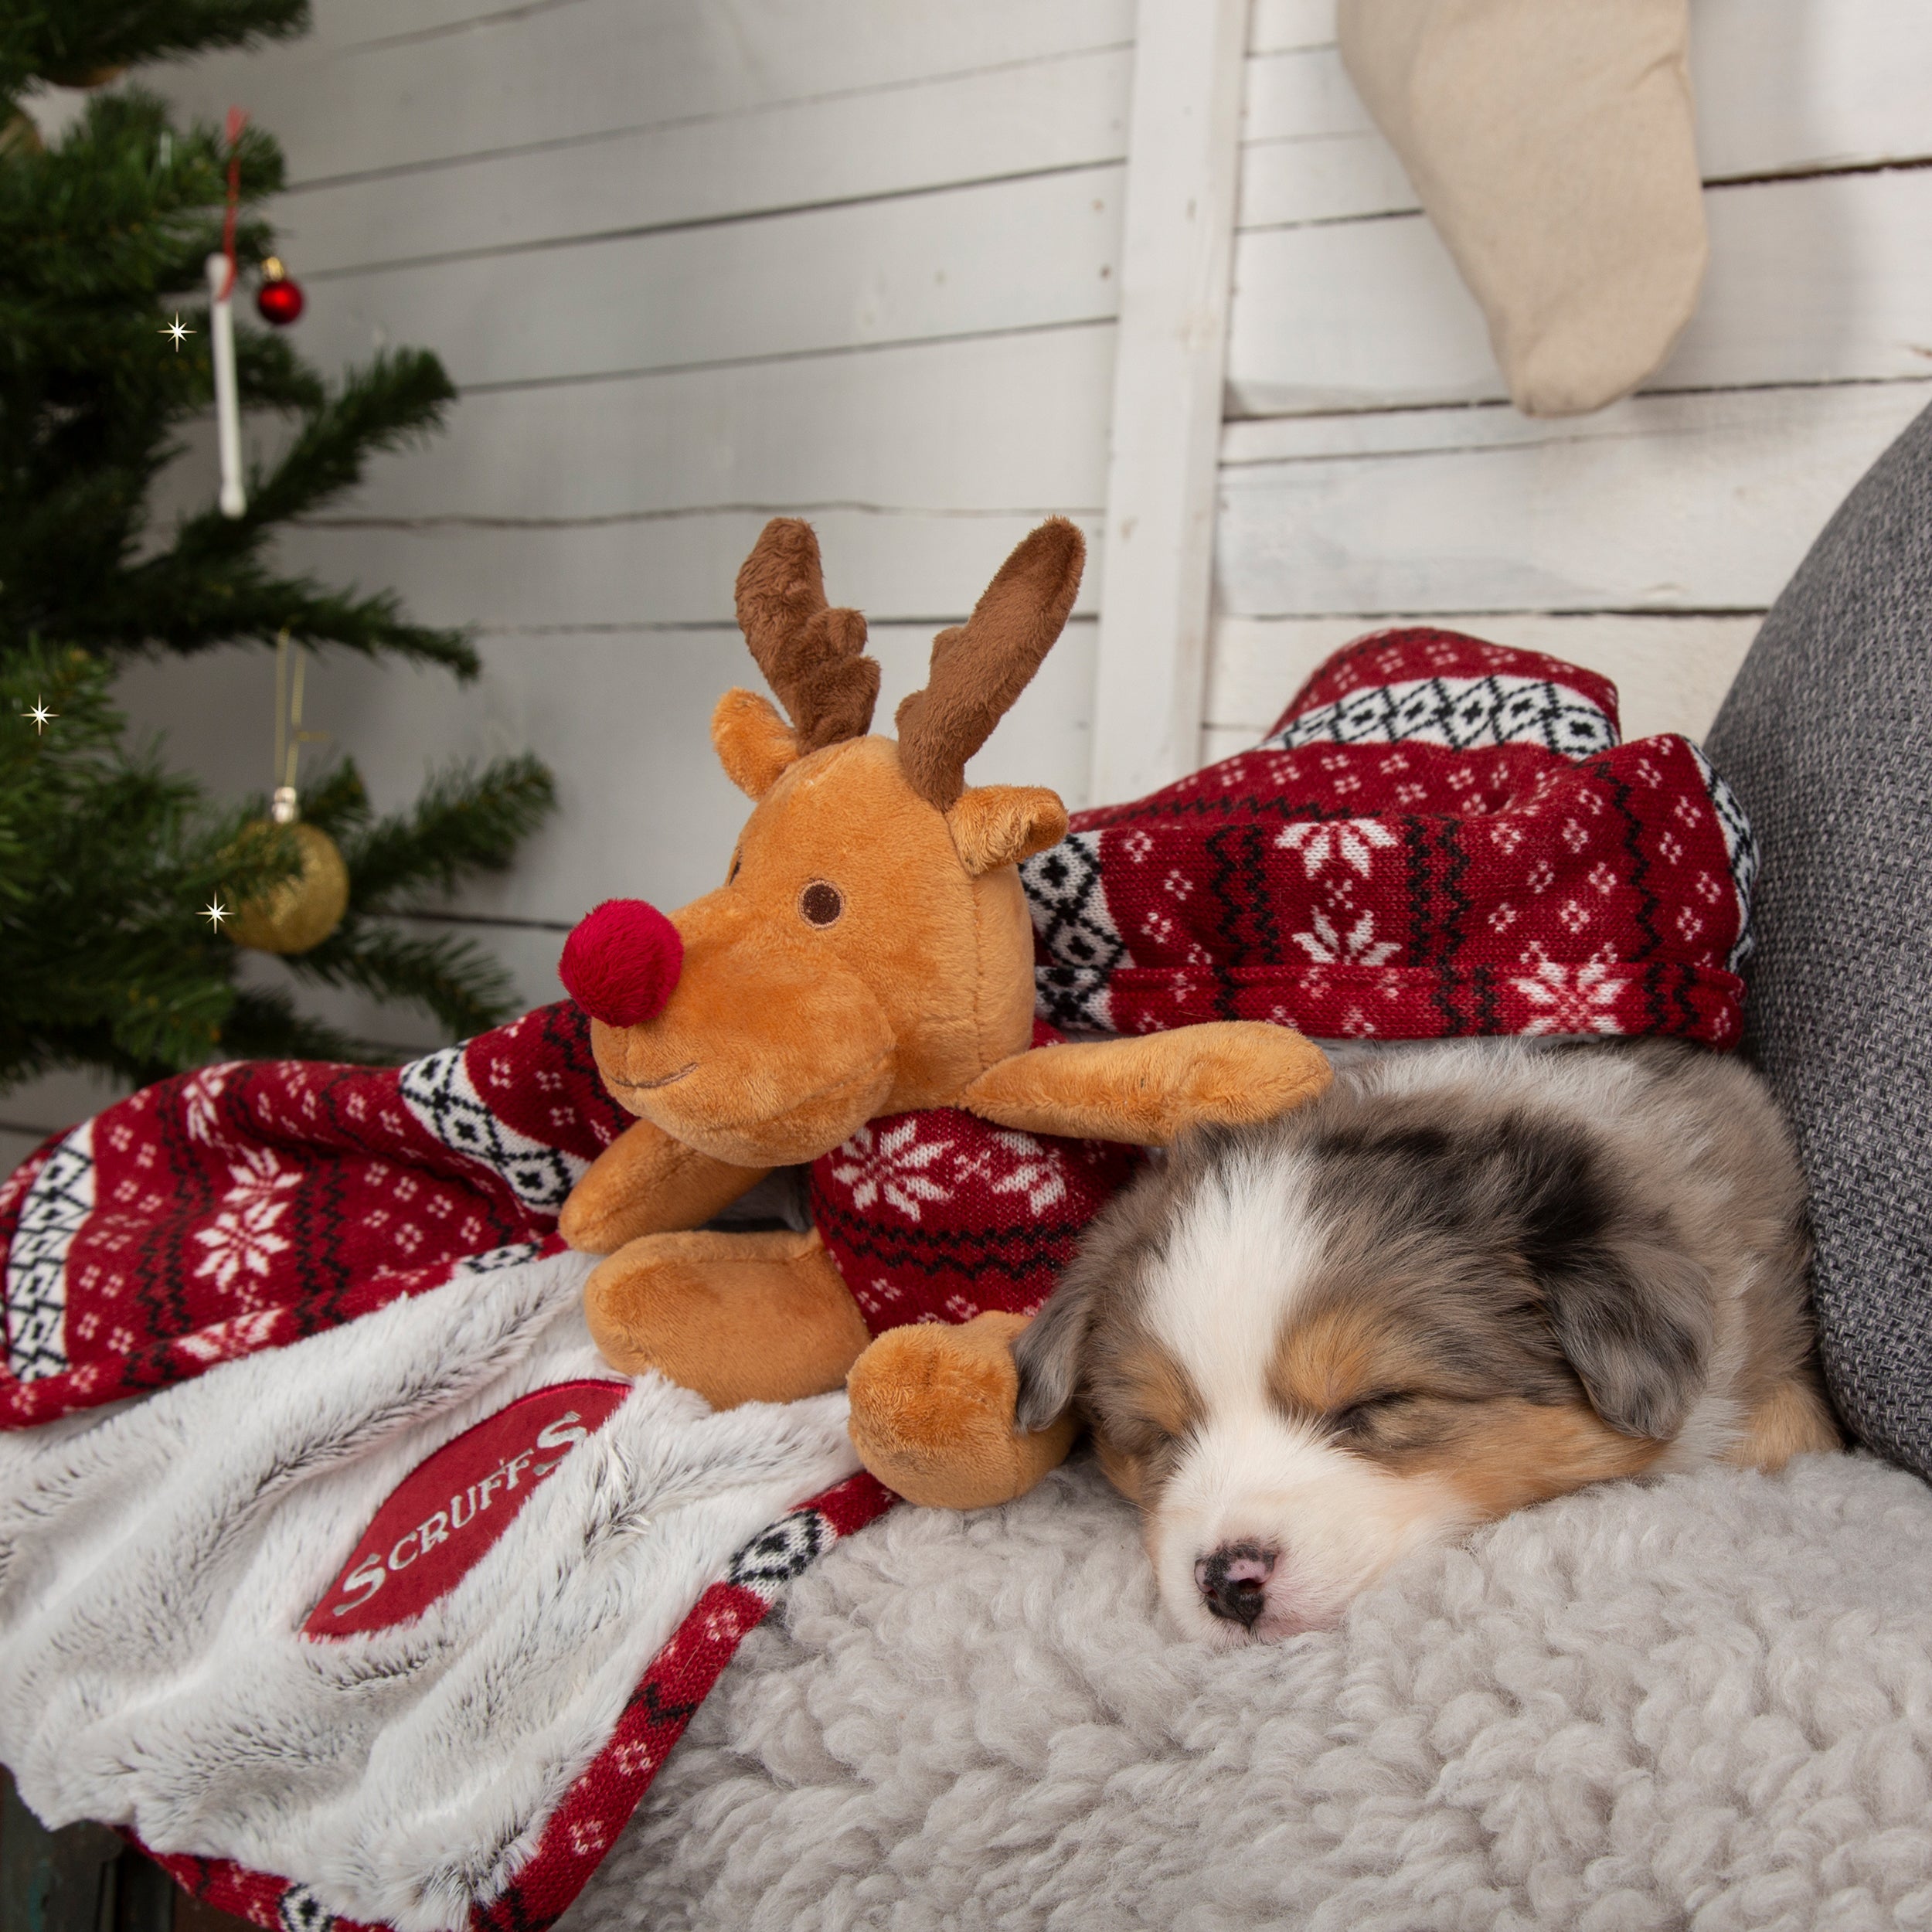 Scruffs Santa Paws Blanket Toy Dog Gift Set Burgundy